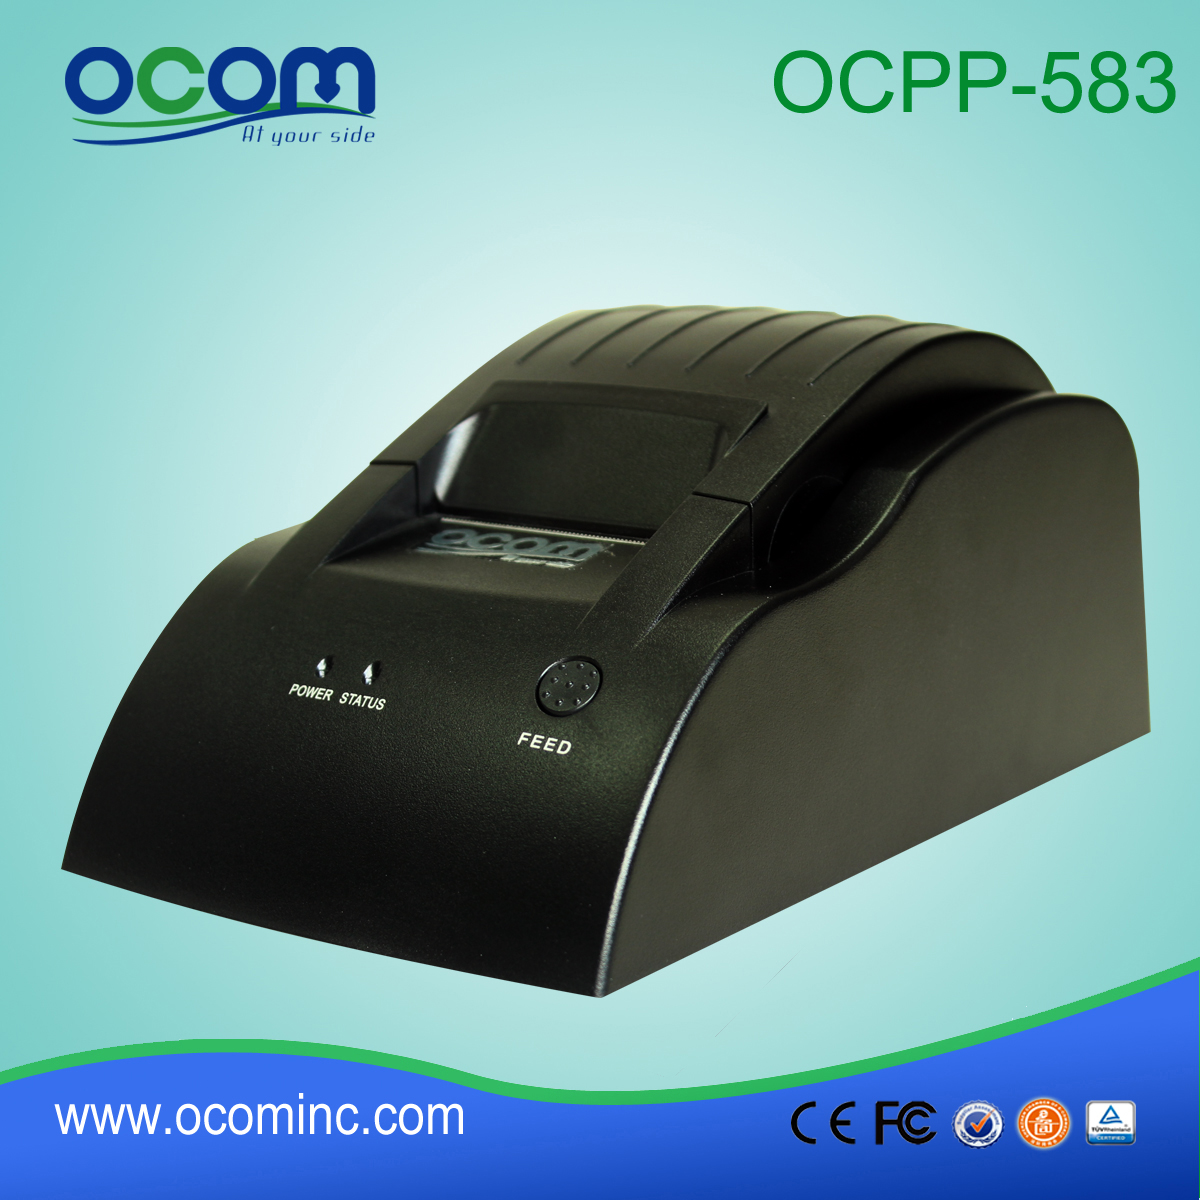 Cuenta de la posición de 58 mm de bajo coste impresora OCPP-583